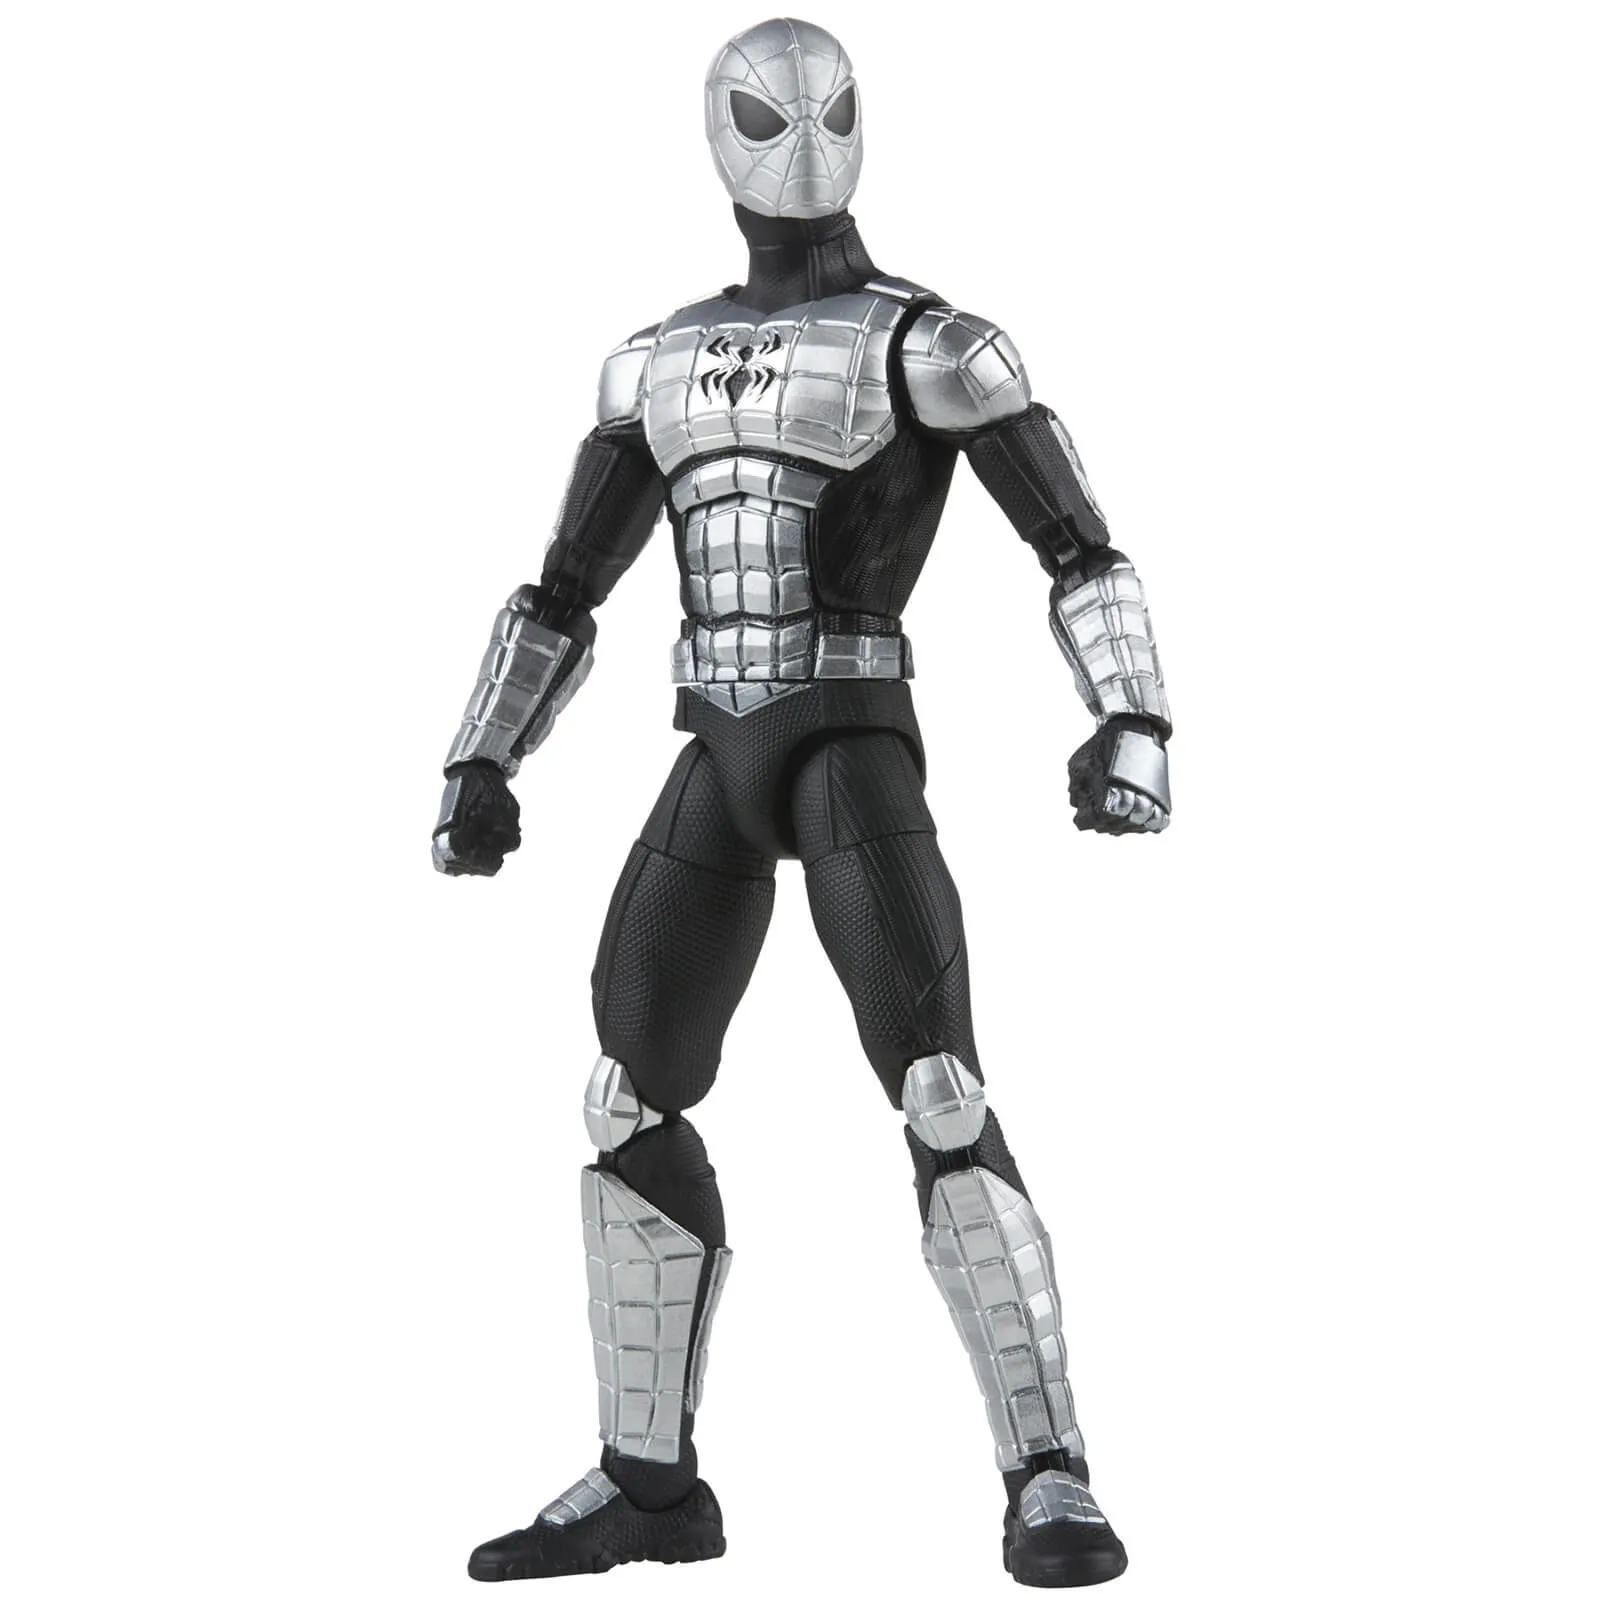  Marvel Legends Spider-Man Series Spider-Armor Mk I 6 Inch Action Figure